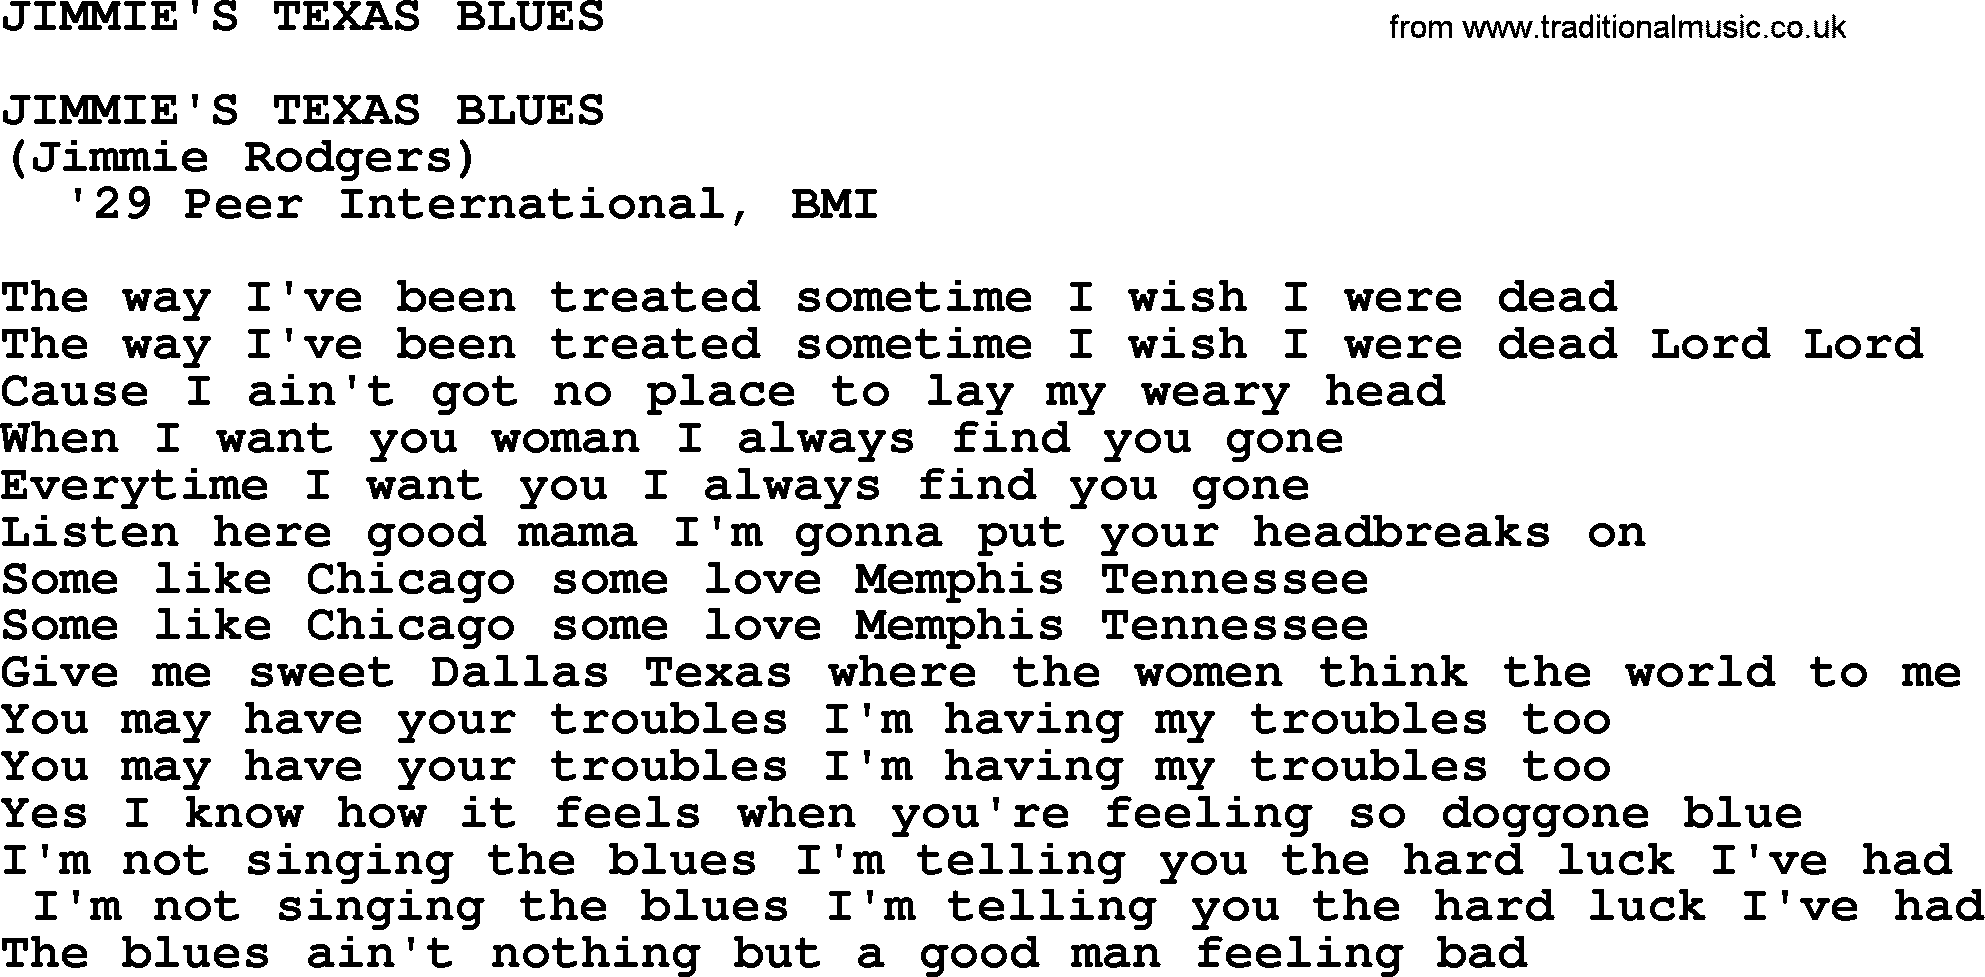 Merle Haggard song: Jimmie's Texas Blues, lyrics.